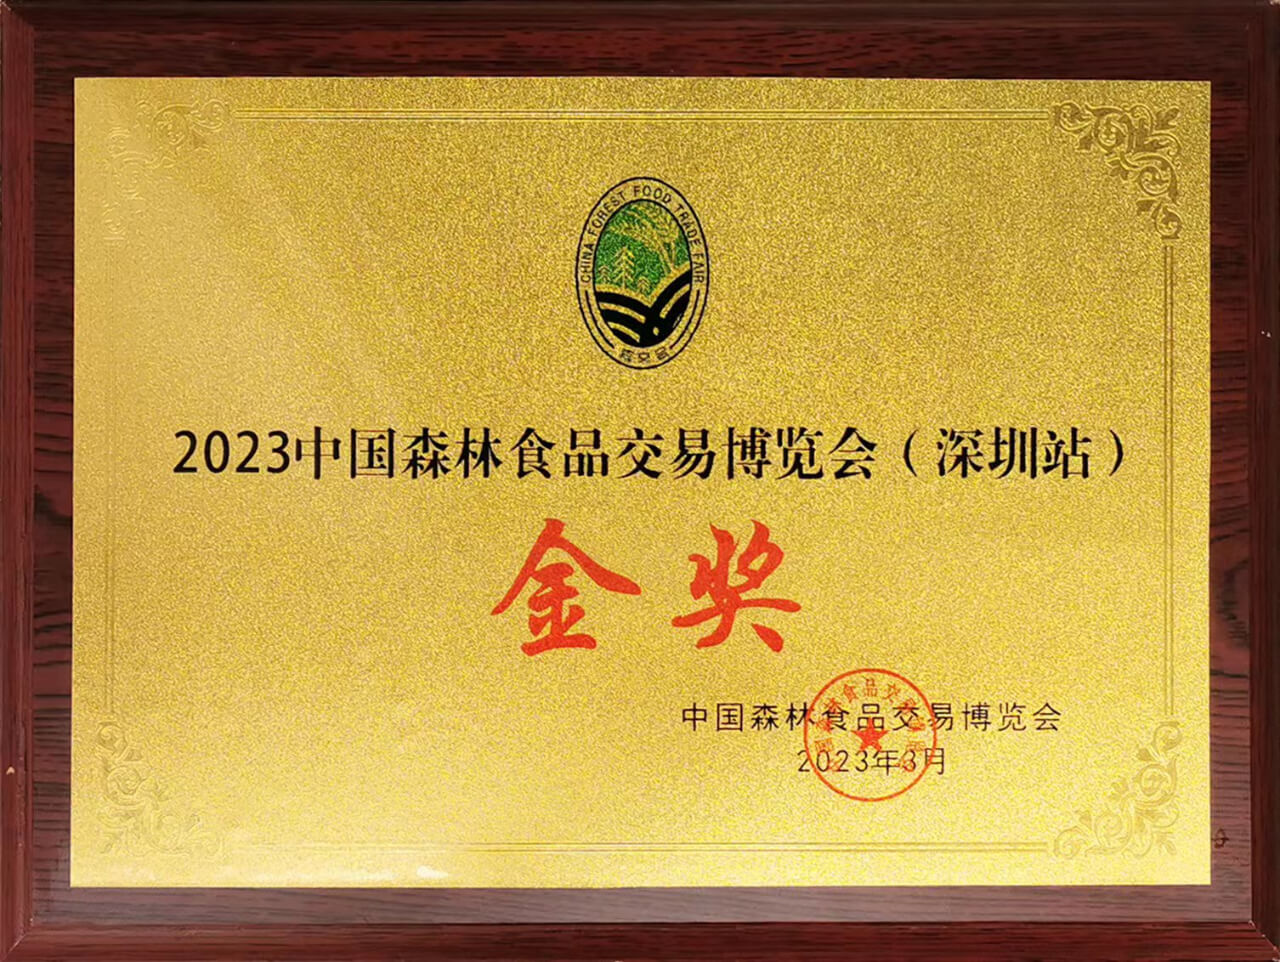 戈宝红麻茶获2023中国森林食品交易博览会金奖